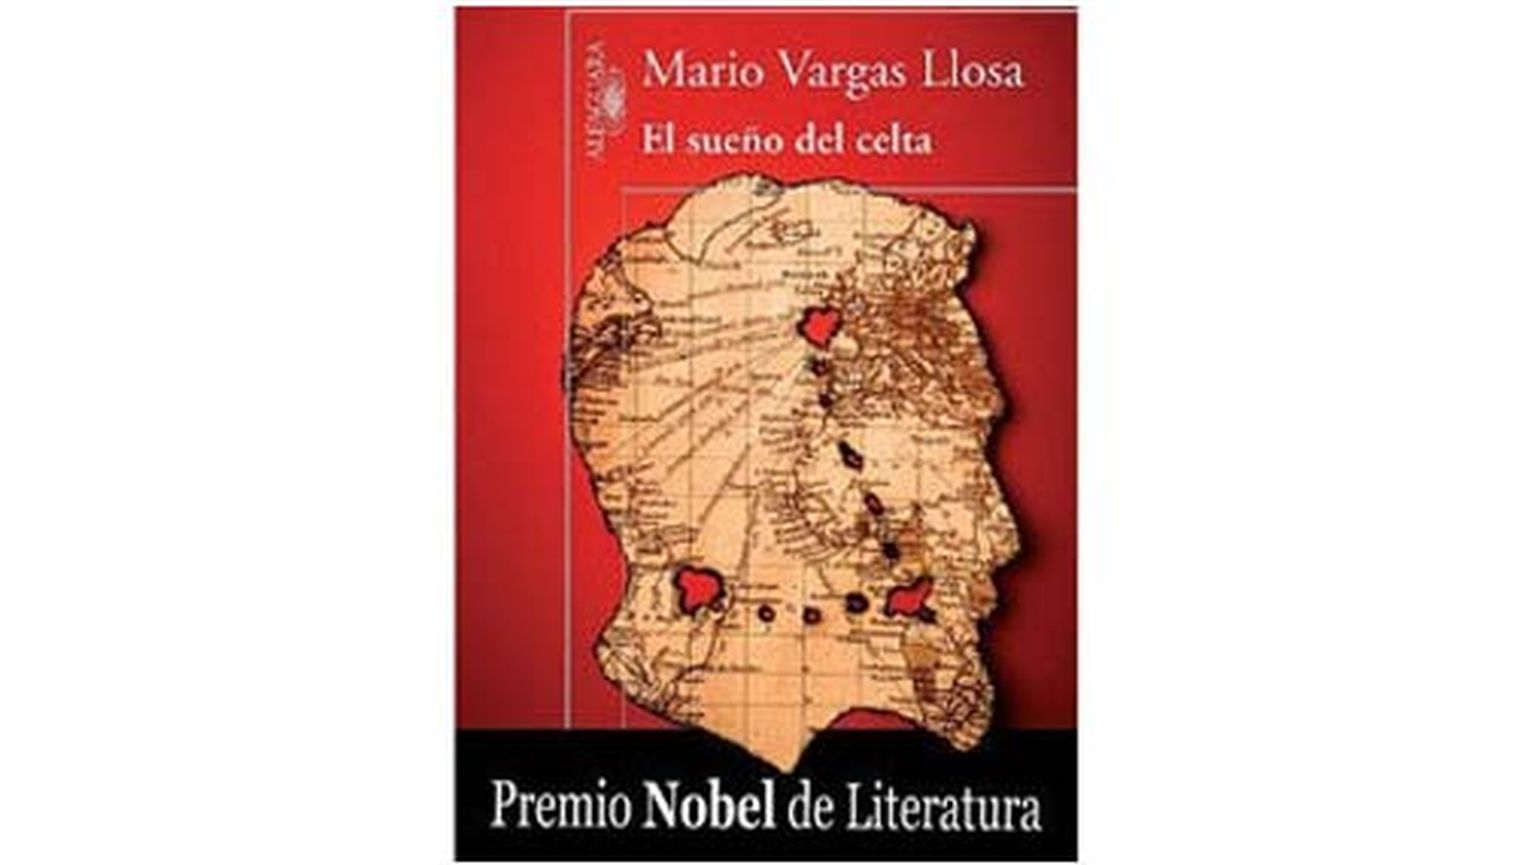 Обложка книги Марио Варгаса Льосы "Сон кельта".